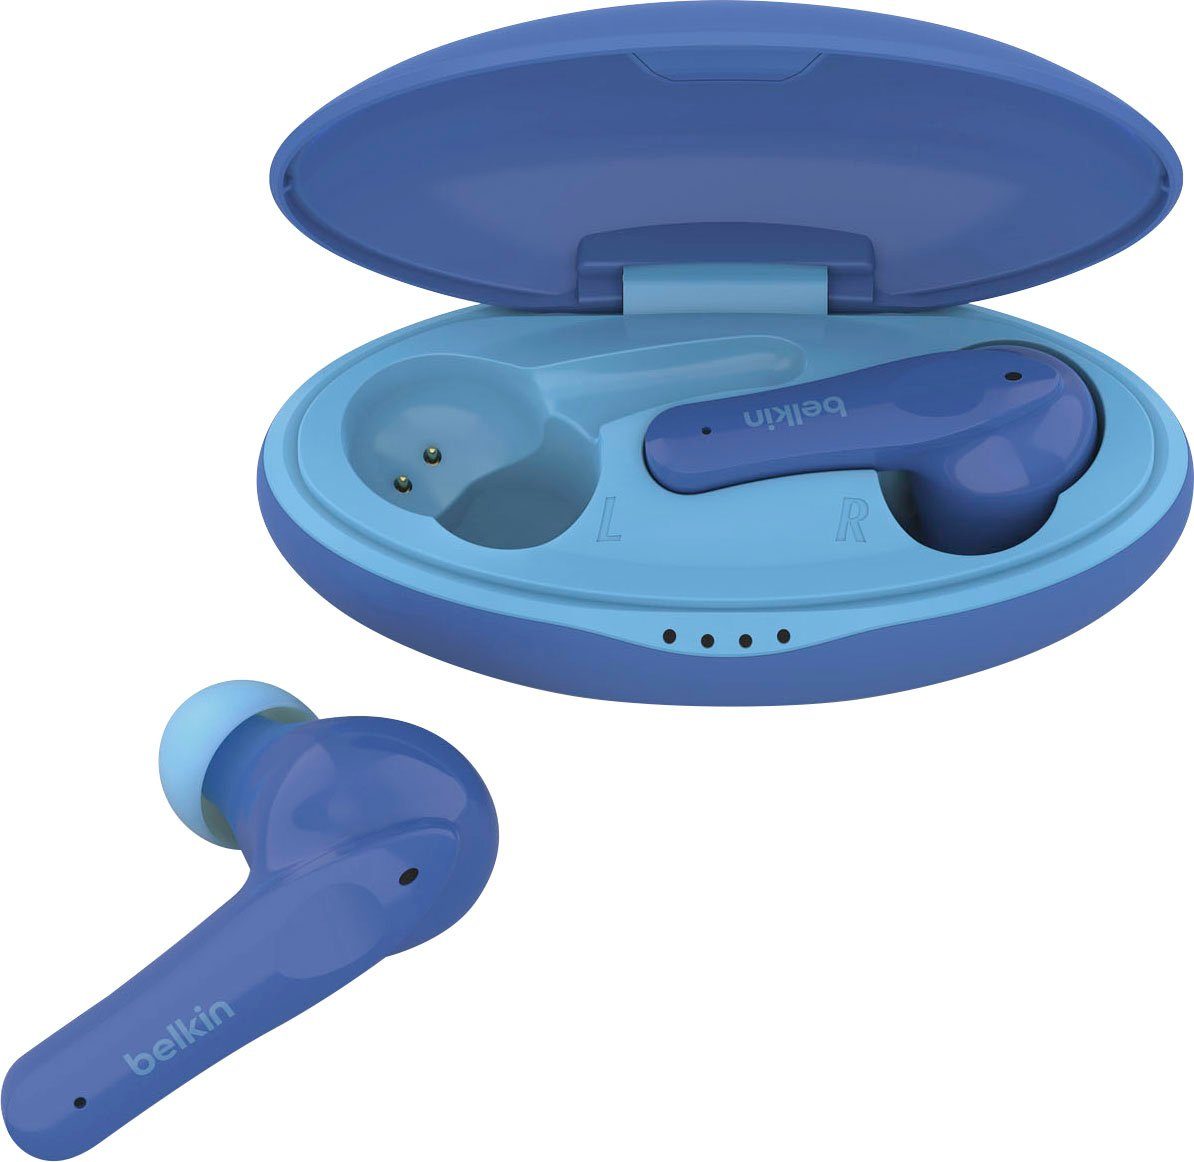 (auf Kopfhörer - begrenzt; NANO wireless 85 SOUNDFORM In-Ear-Kopfhörer dB Belkin Kopfhörer) Kinder blau am